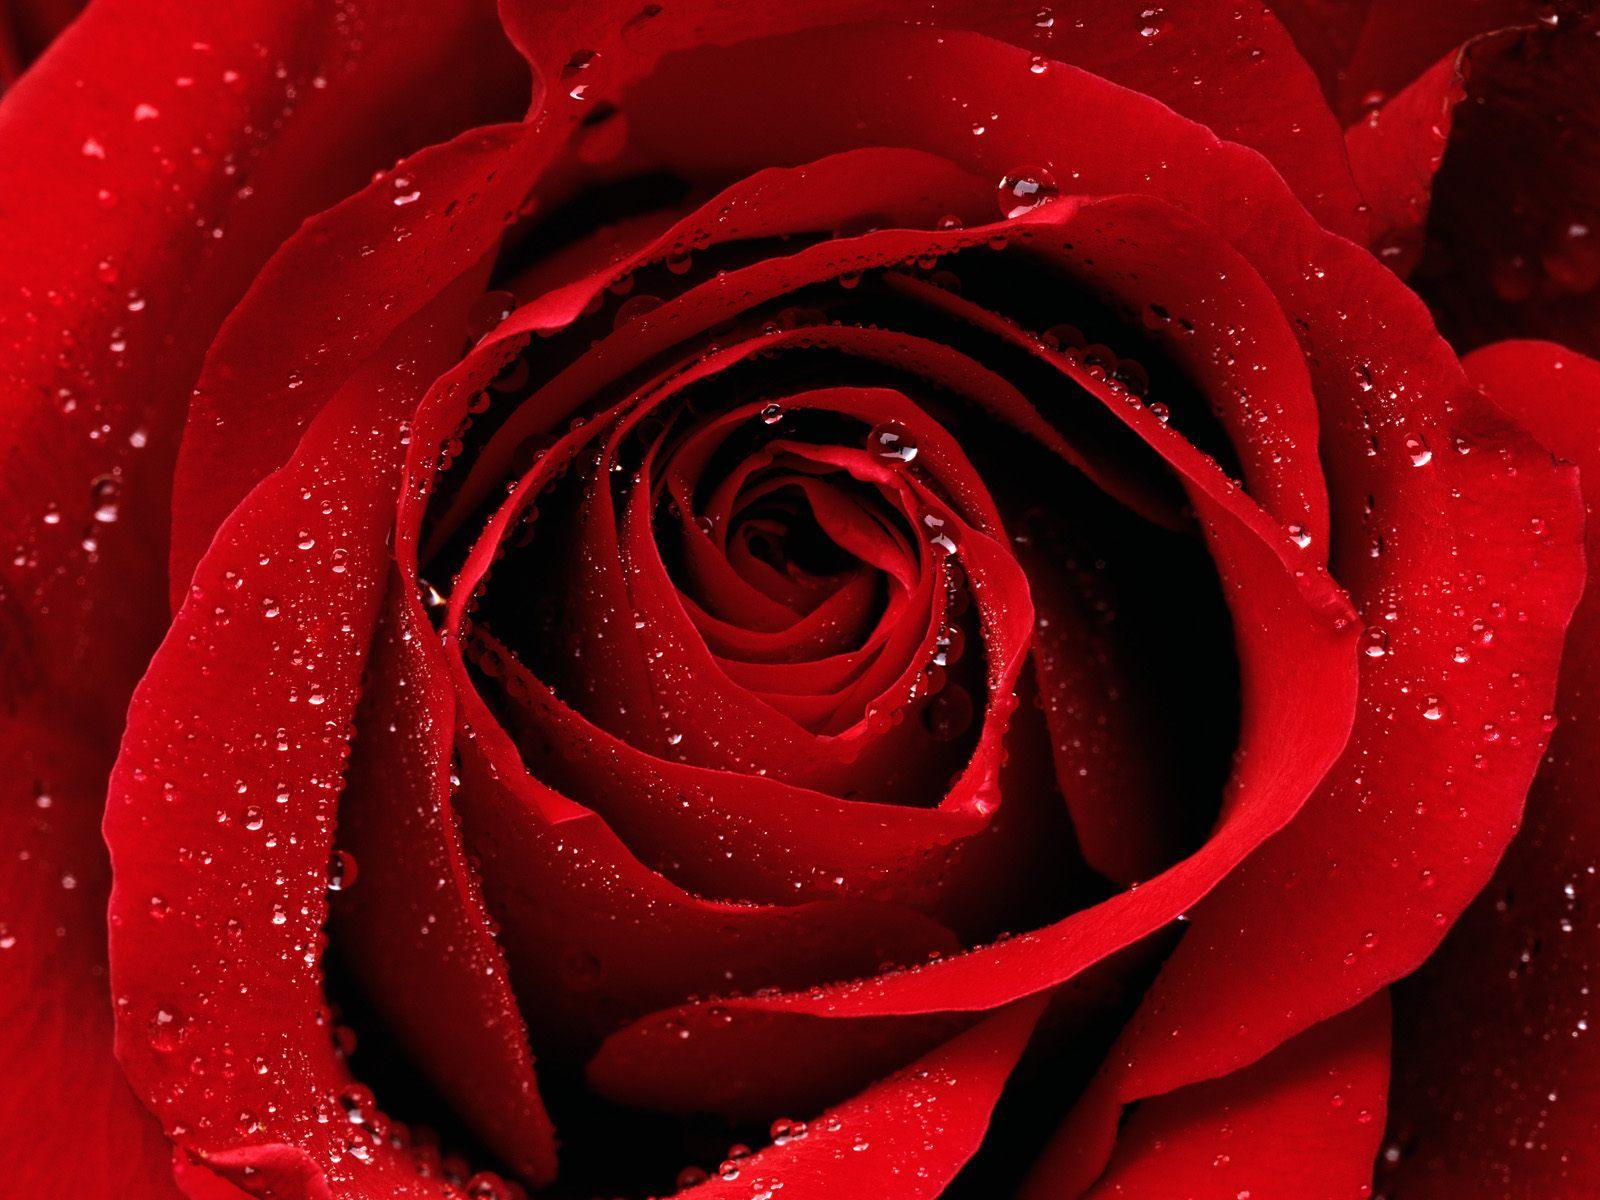 Red rose on a desktop wallpaper.